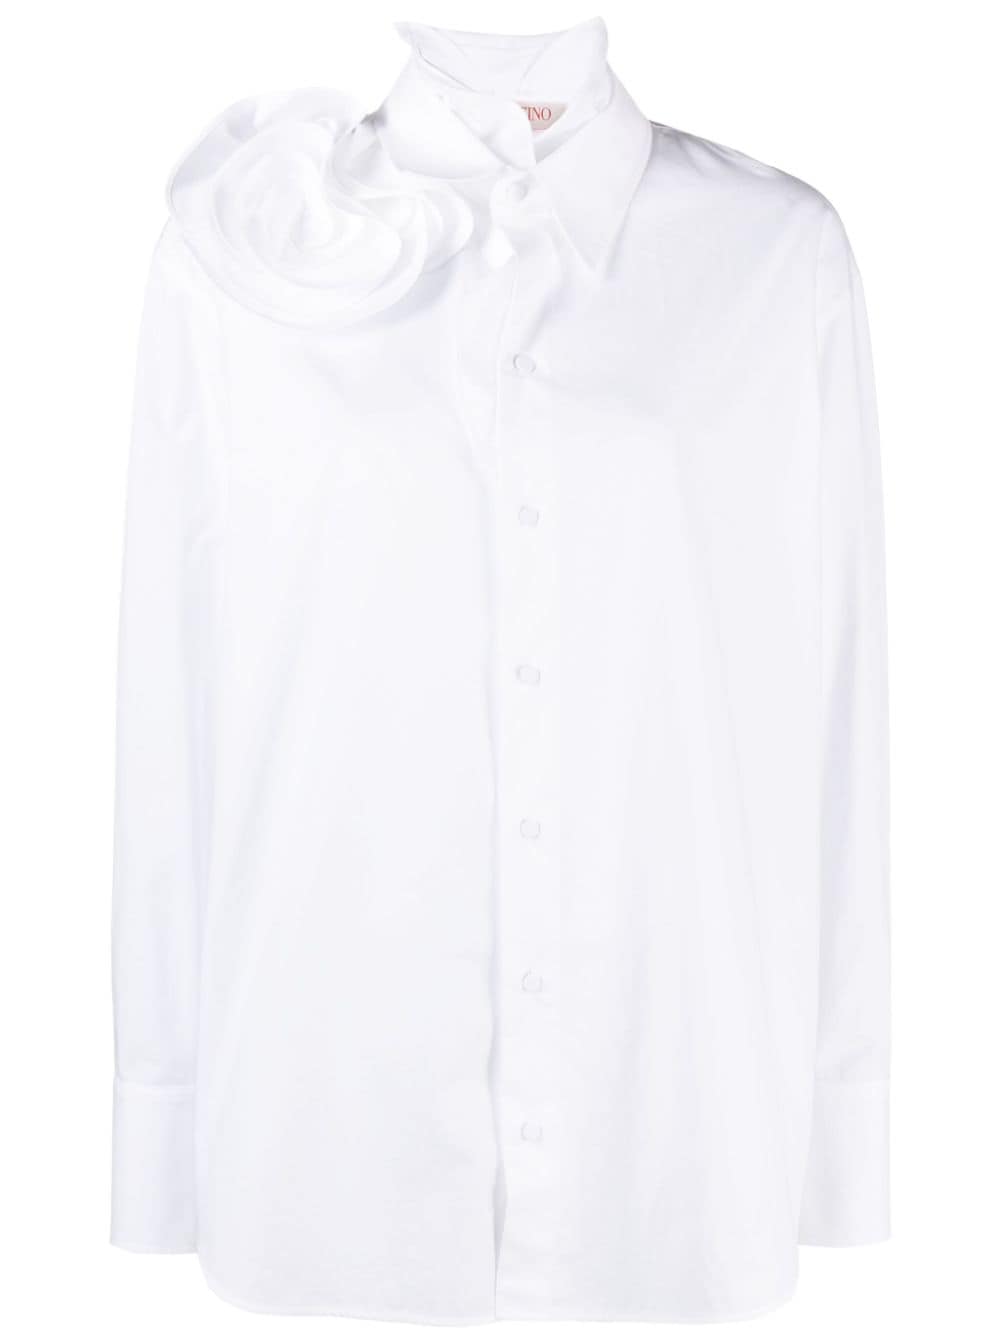 Floral-appliqué cotton shirt<BR/><BR/><BR/>